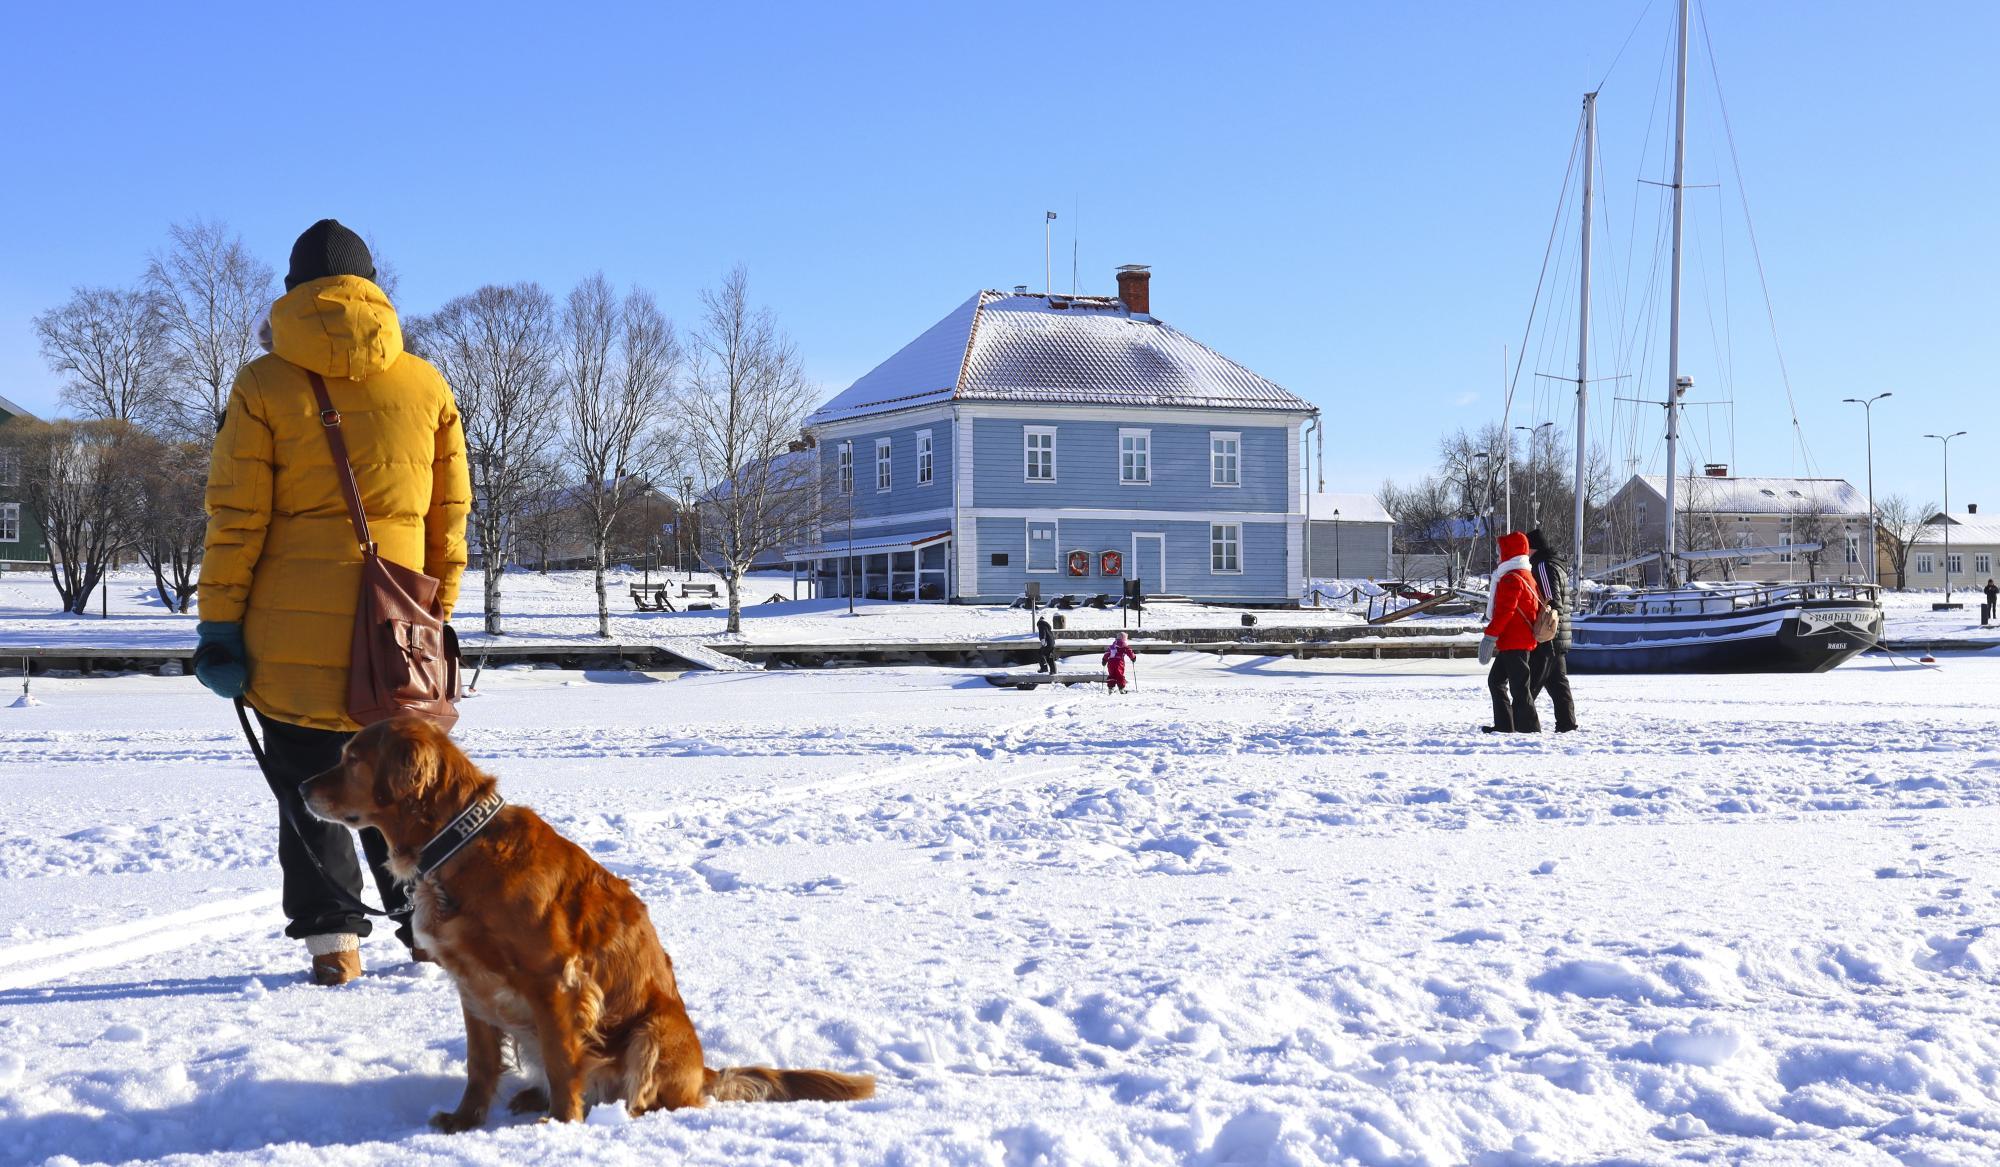 Lumisessa maisemassa ihmisiä, koira ja laiva. Taustalla Raahen Pakkahuoneen museo sekä muita vanhoja rakennuksia.